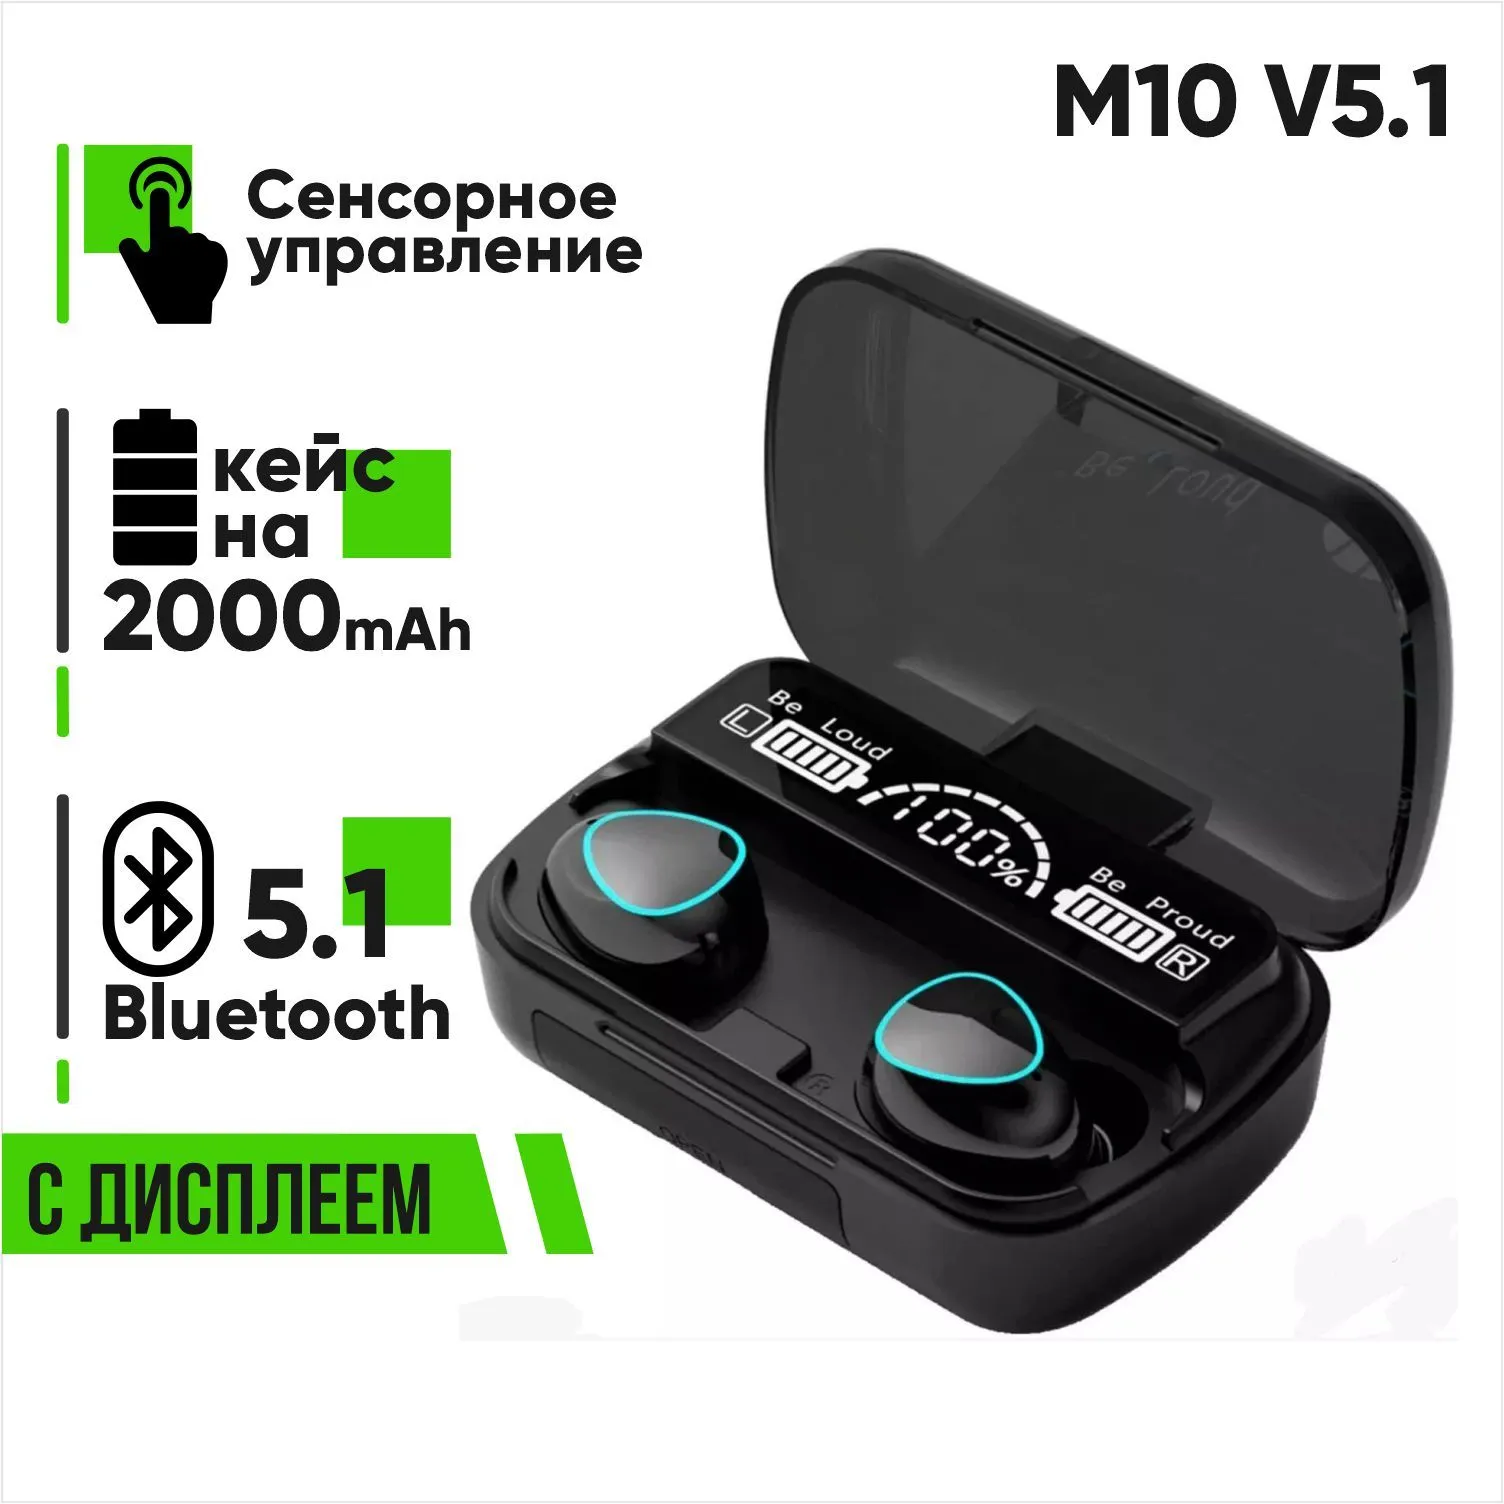 Беспроводная гарнитура Bluetooth M10 V5.1 с дисплеем (черный)